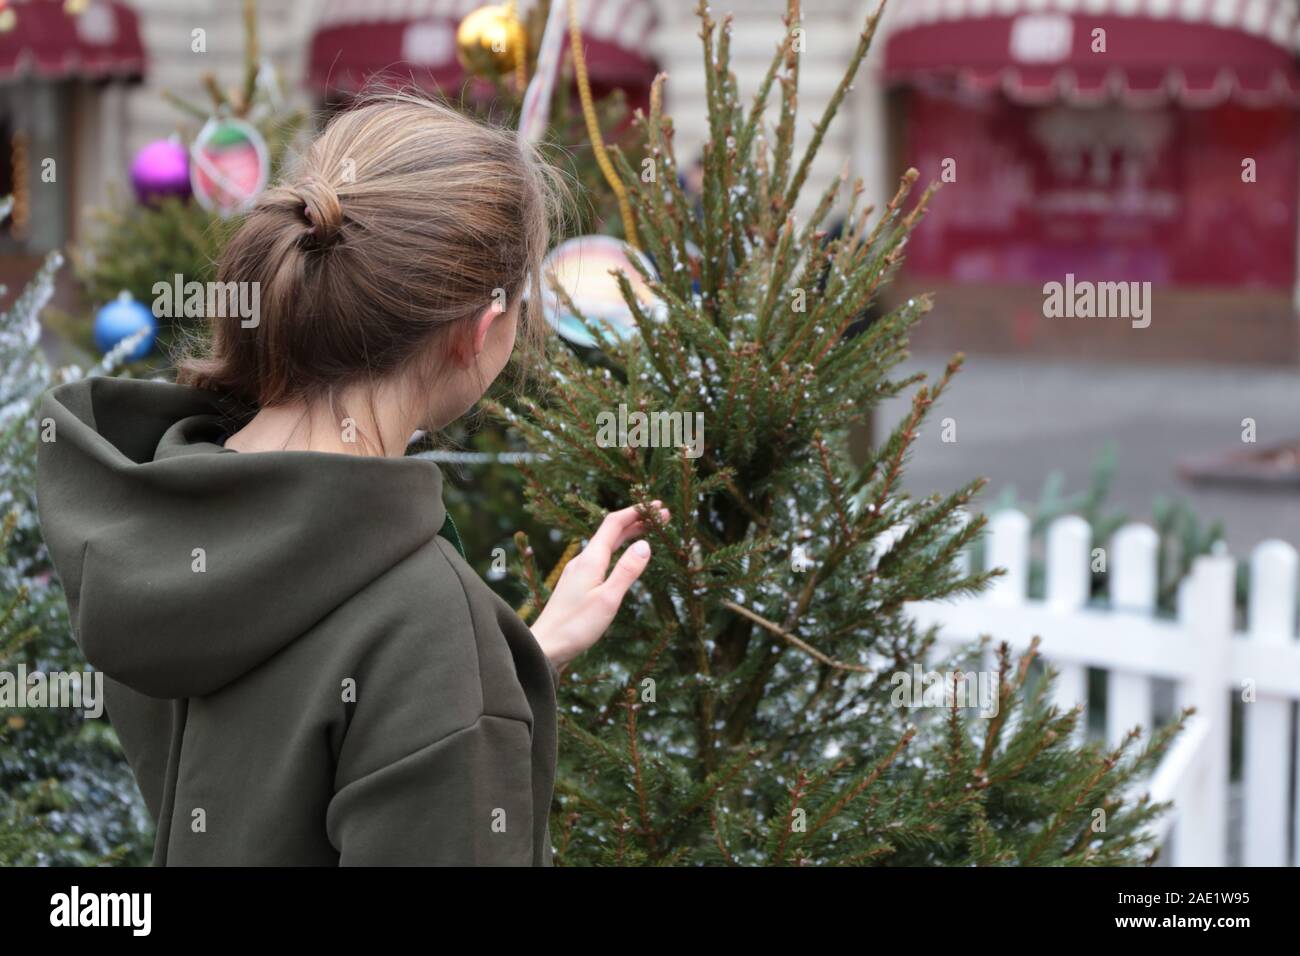 Girl touching arbre de Noël sur une rue couverte de neige. Concept de la fête du Nouvel An, les vacances d'hiver, en ville, de l'acheteur au marché de Noël Banque D'Images